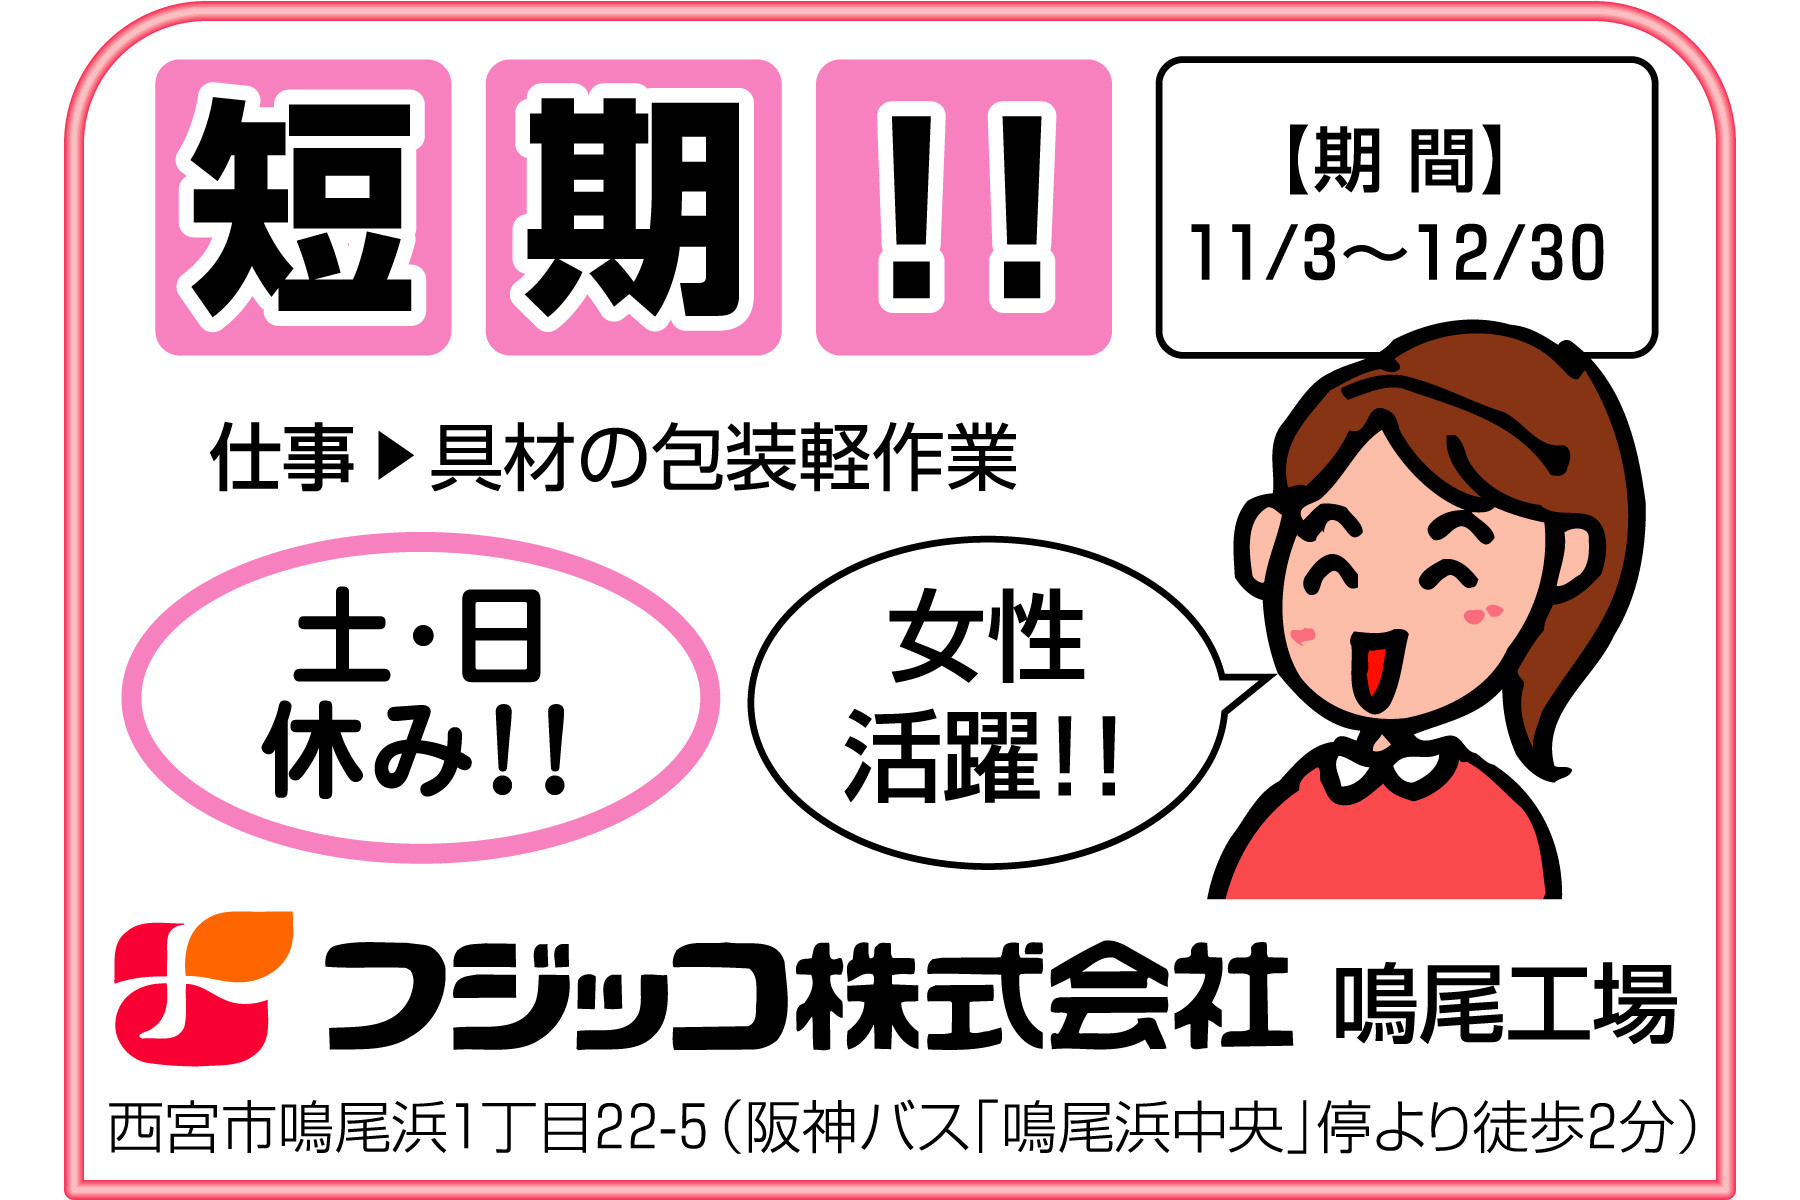 西宮 フジッコの短期カンタン作業 女性 中高年歓迎 求人のふぁいと 西宮を中心とした阪神エリアに特化した求人サービスを実施しております